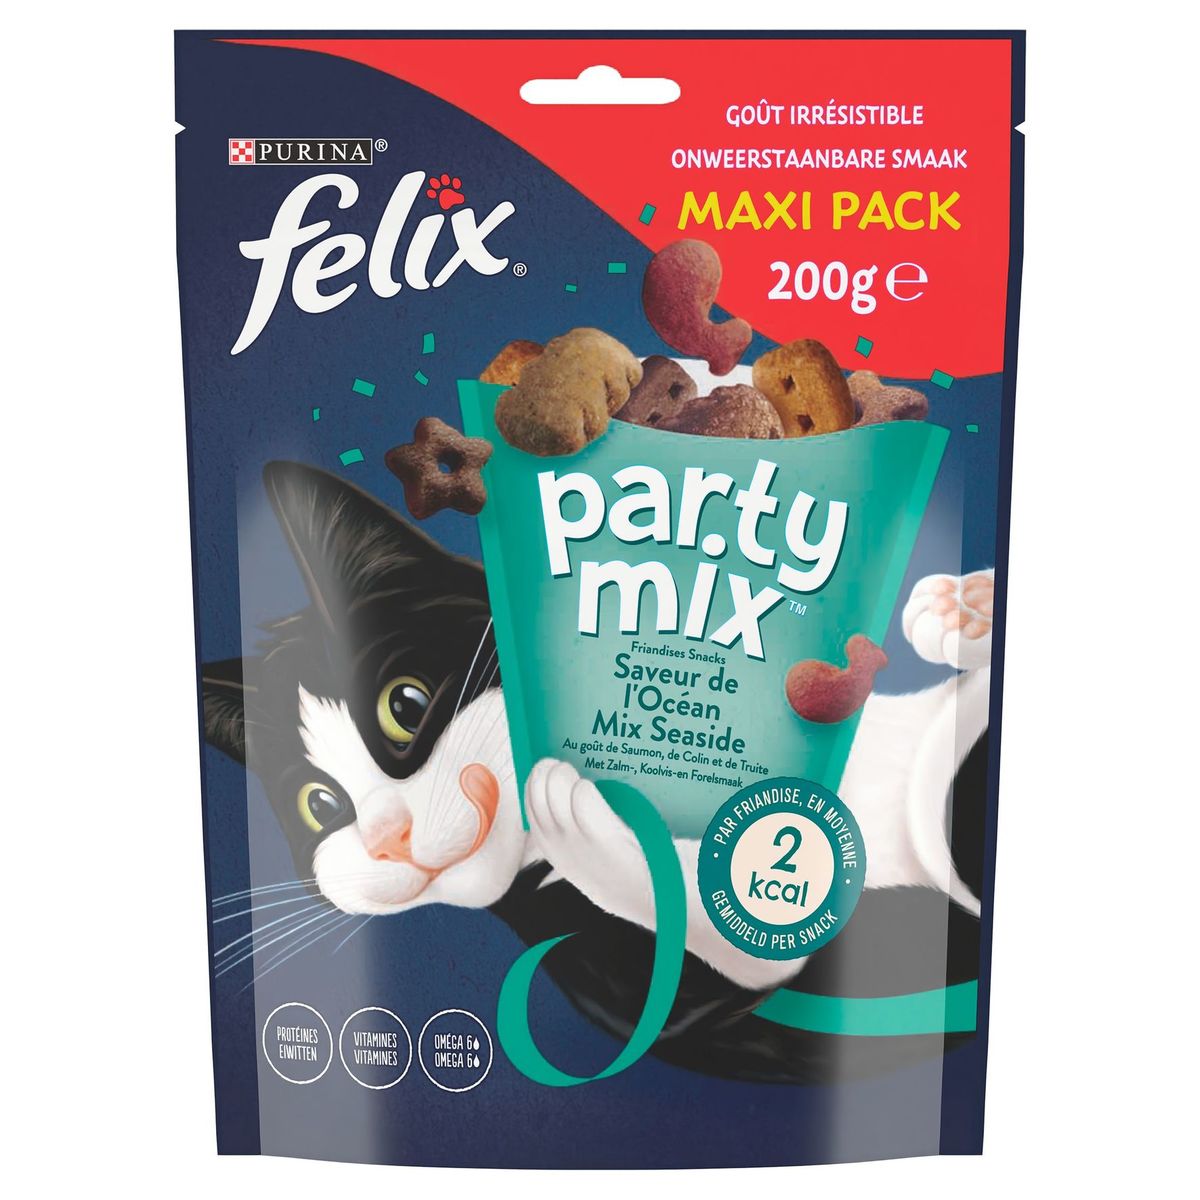 Felix Party Mix Friandises Saveur de l'Océan Maxi Pack 200 g